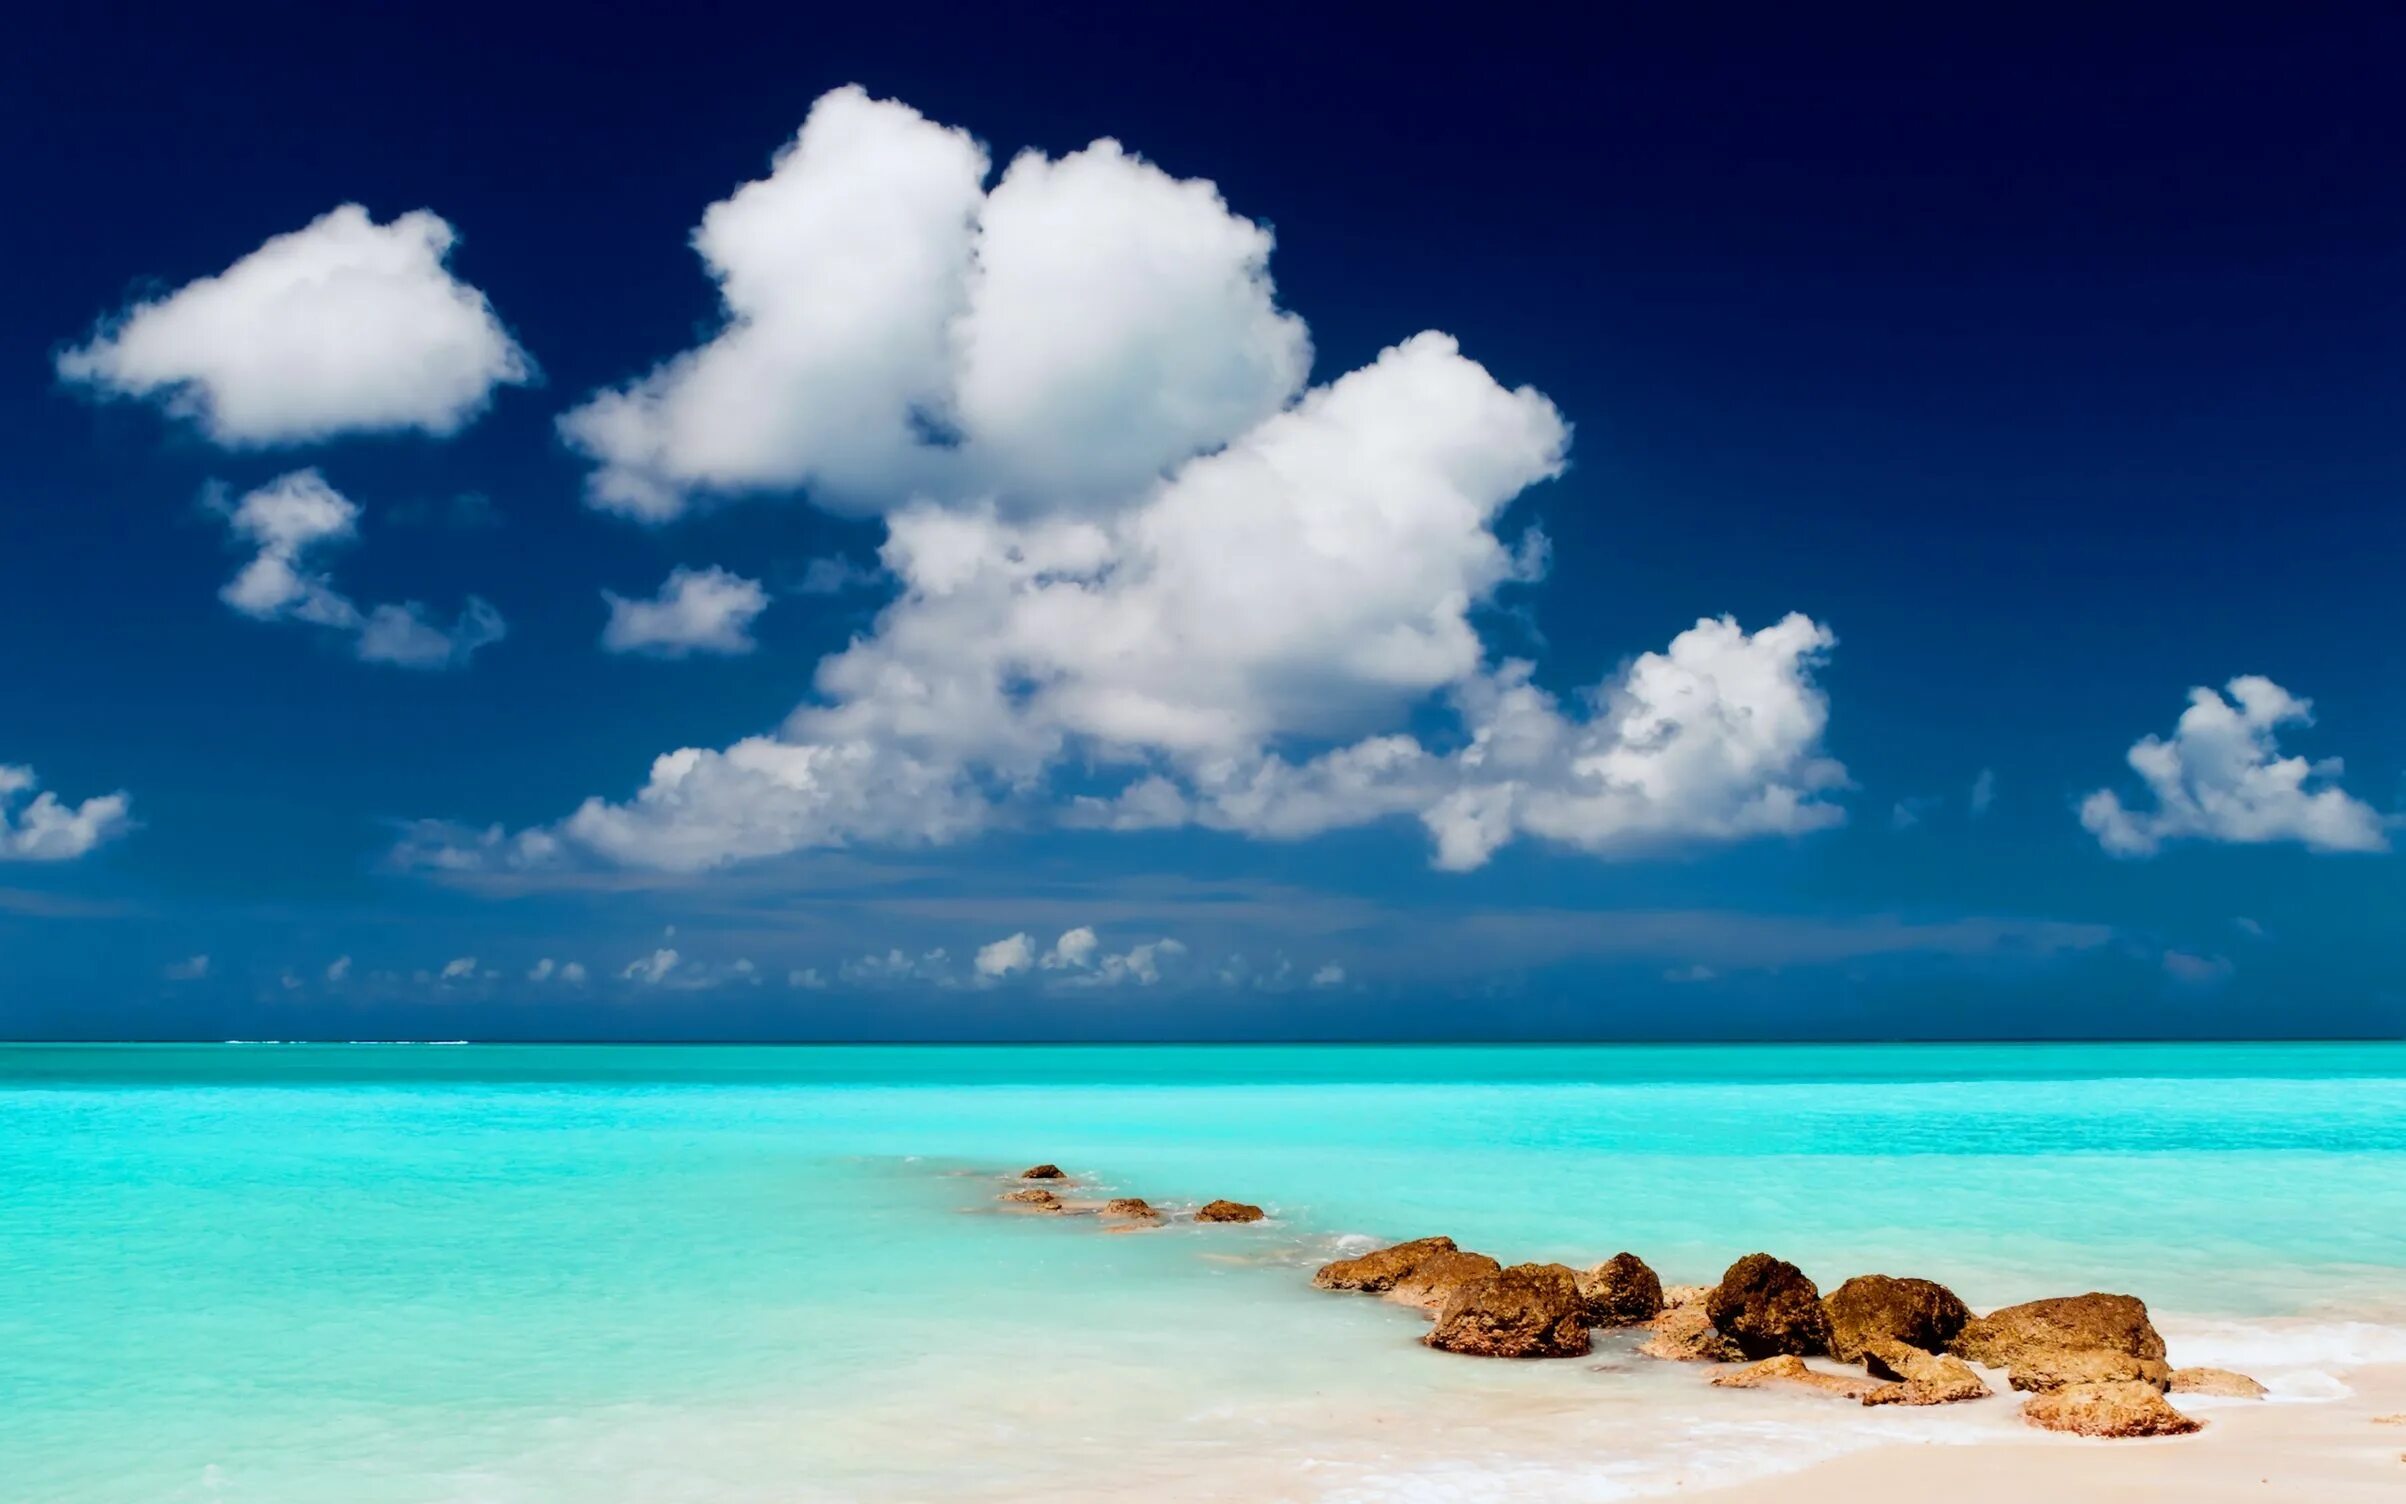 Картинки тема море. Остров Саона голубая Лагуна. Парадиз остров Карибского моря. Красивая природа море. Красивые морские пейзажи.